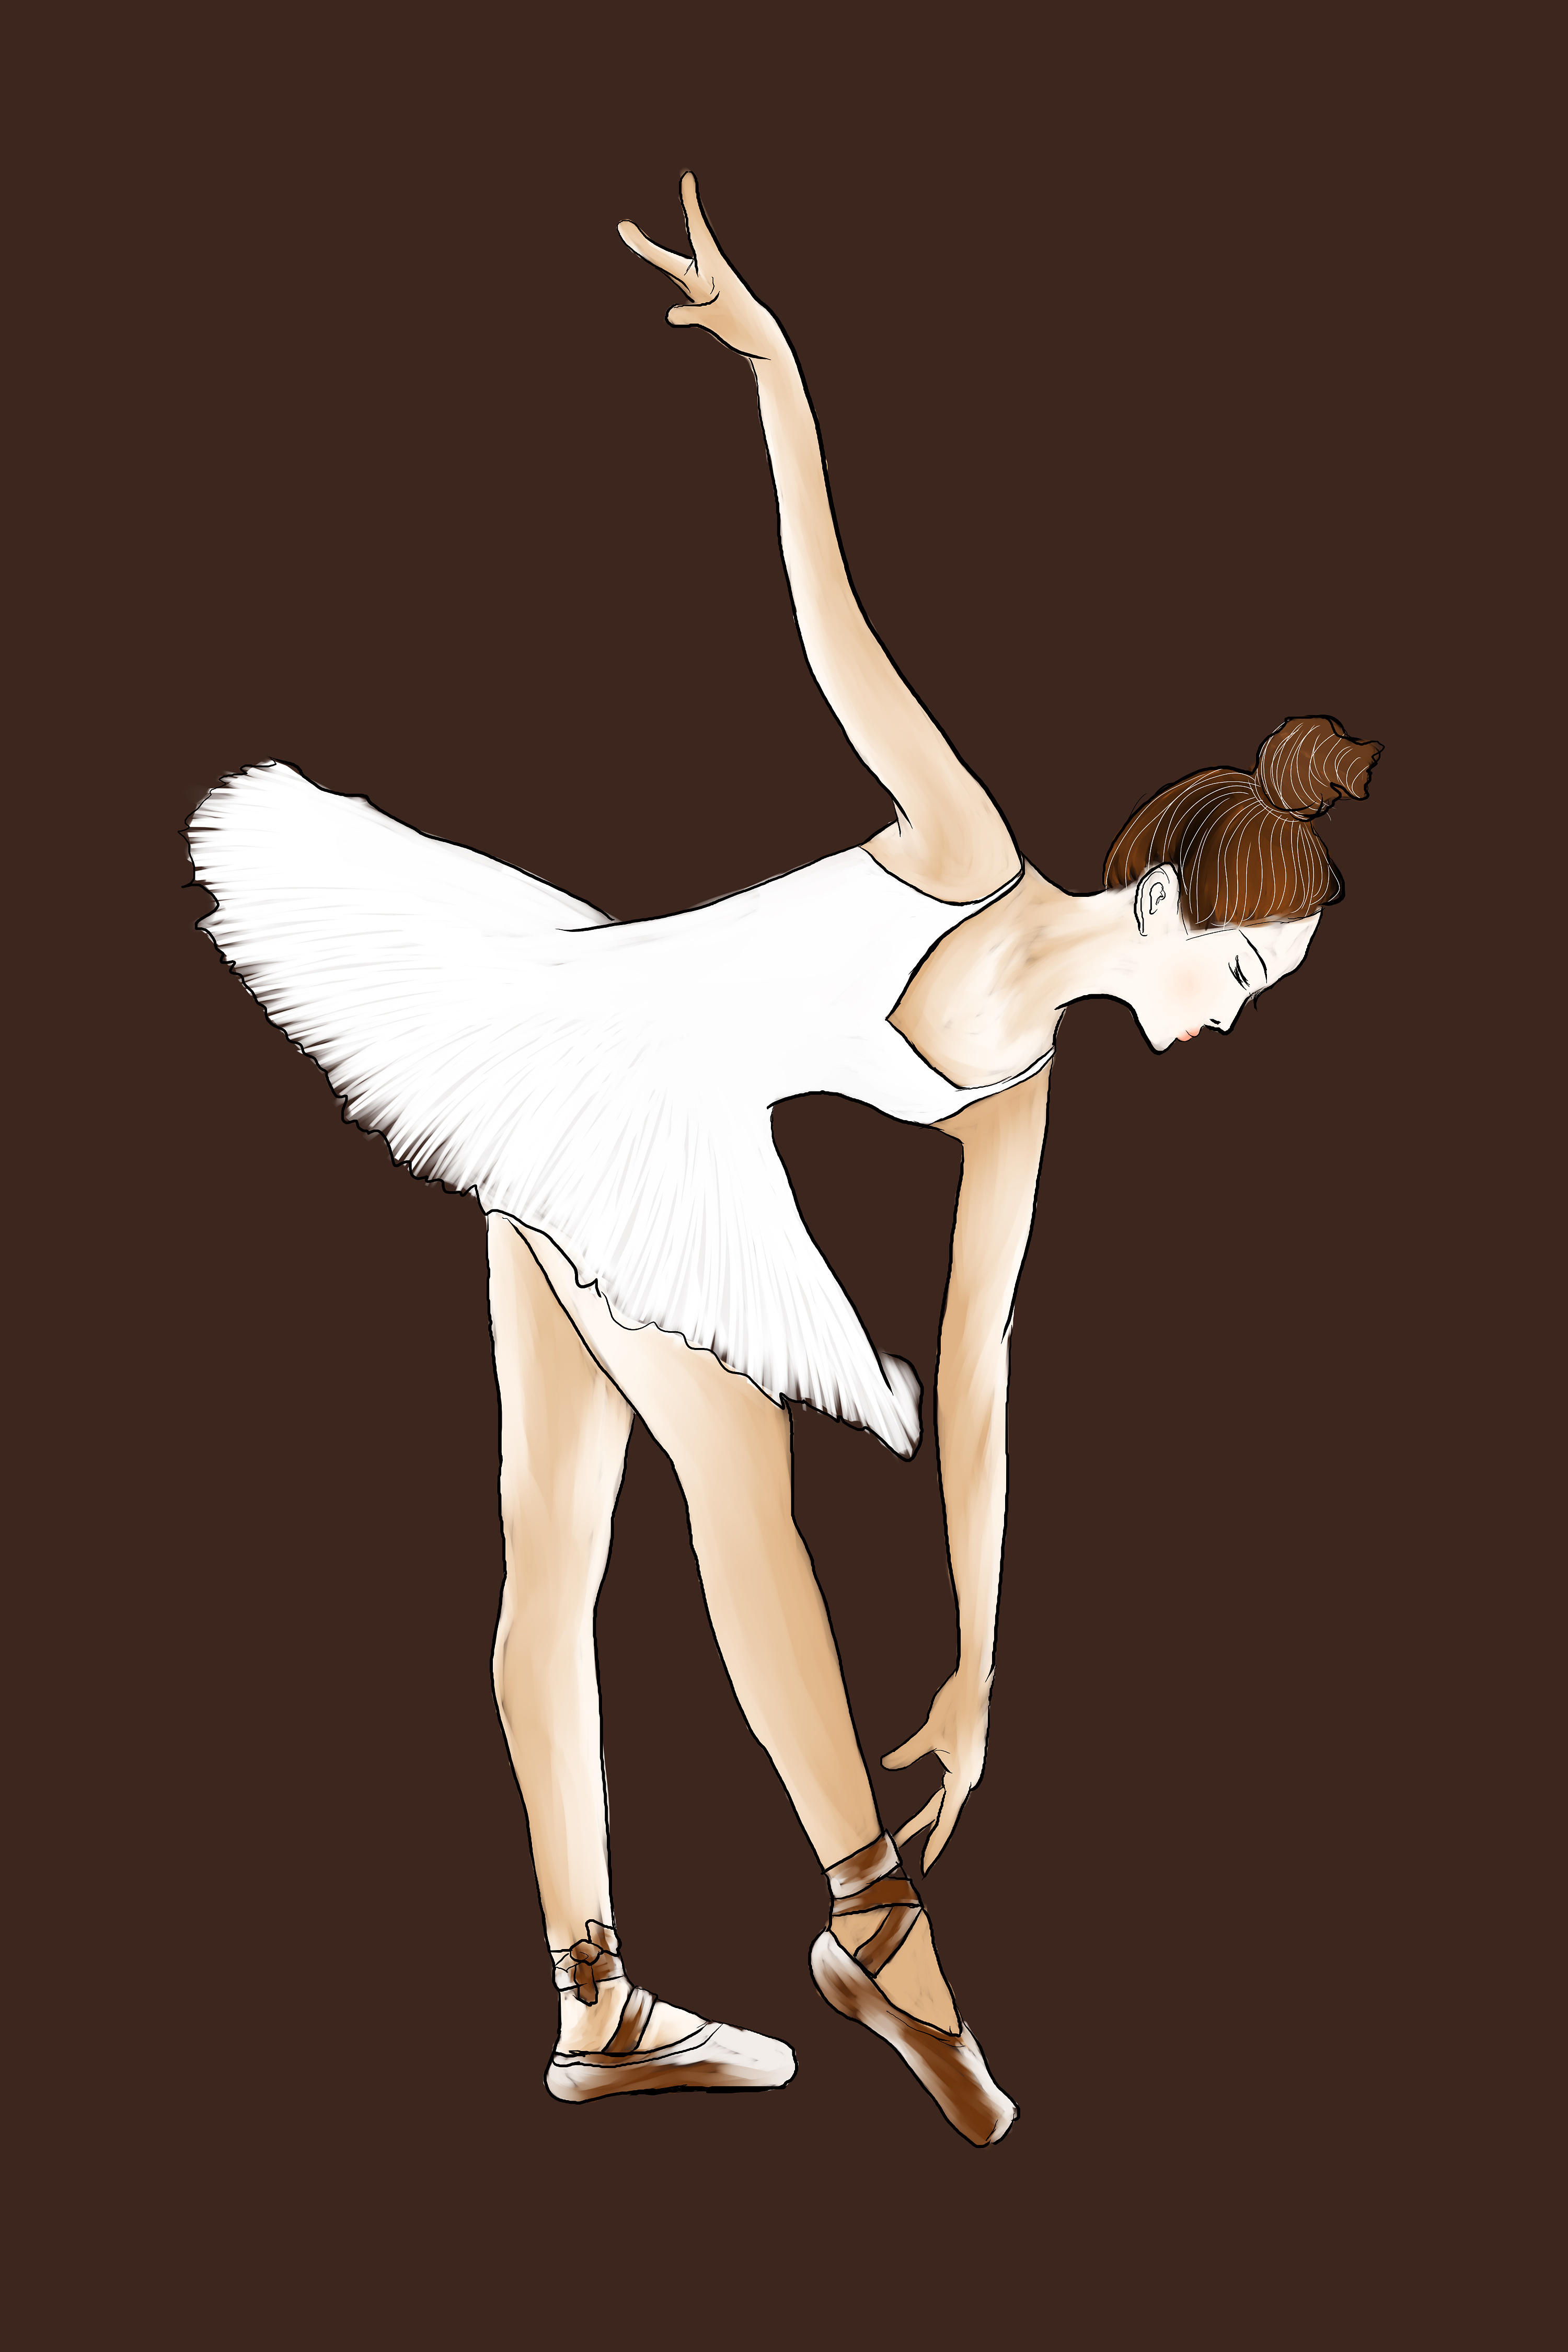 两个手绘的漂亮可爱的芭蕾舞女孩. 向量例证. 插画 包括有 舞蹈演员, 方式, 例证, 字符, 可爱, 神仙 - 208837550